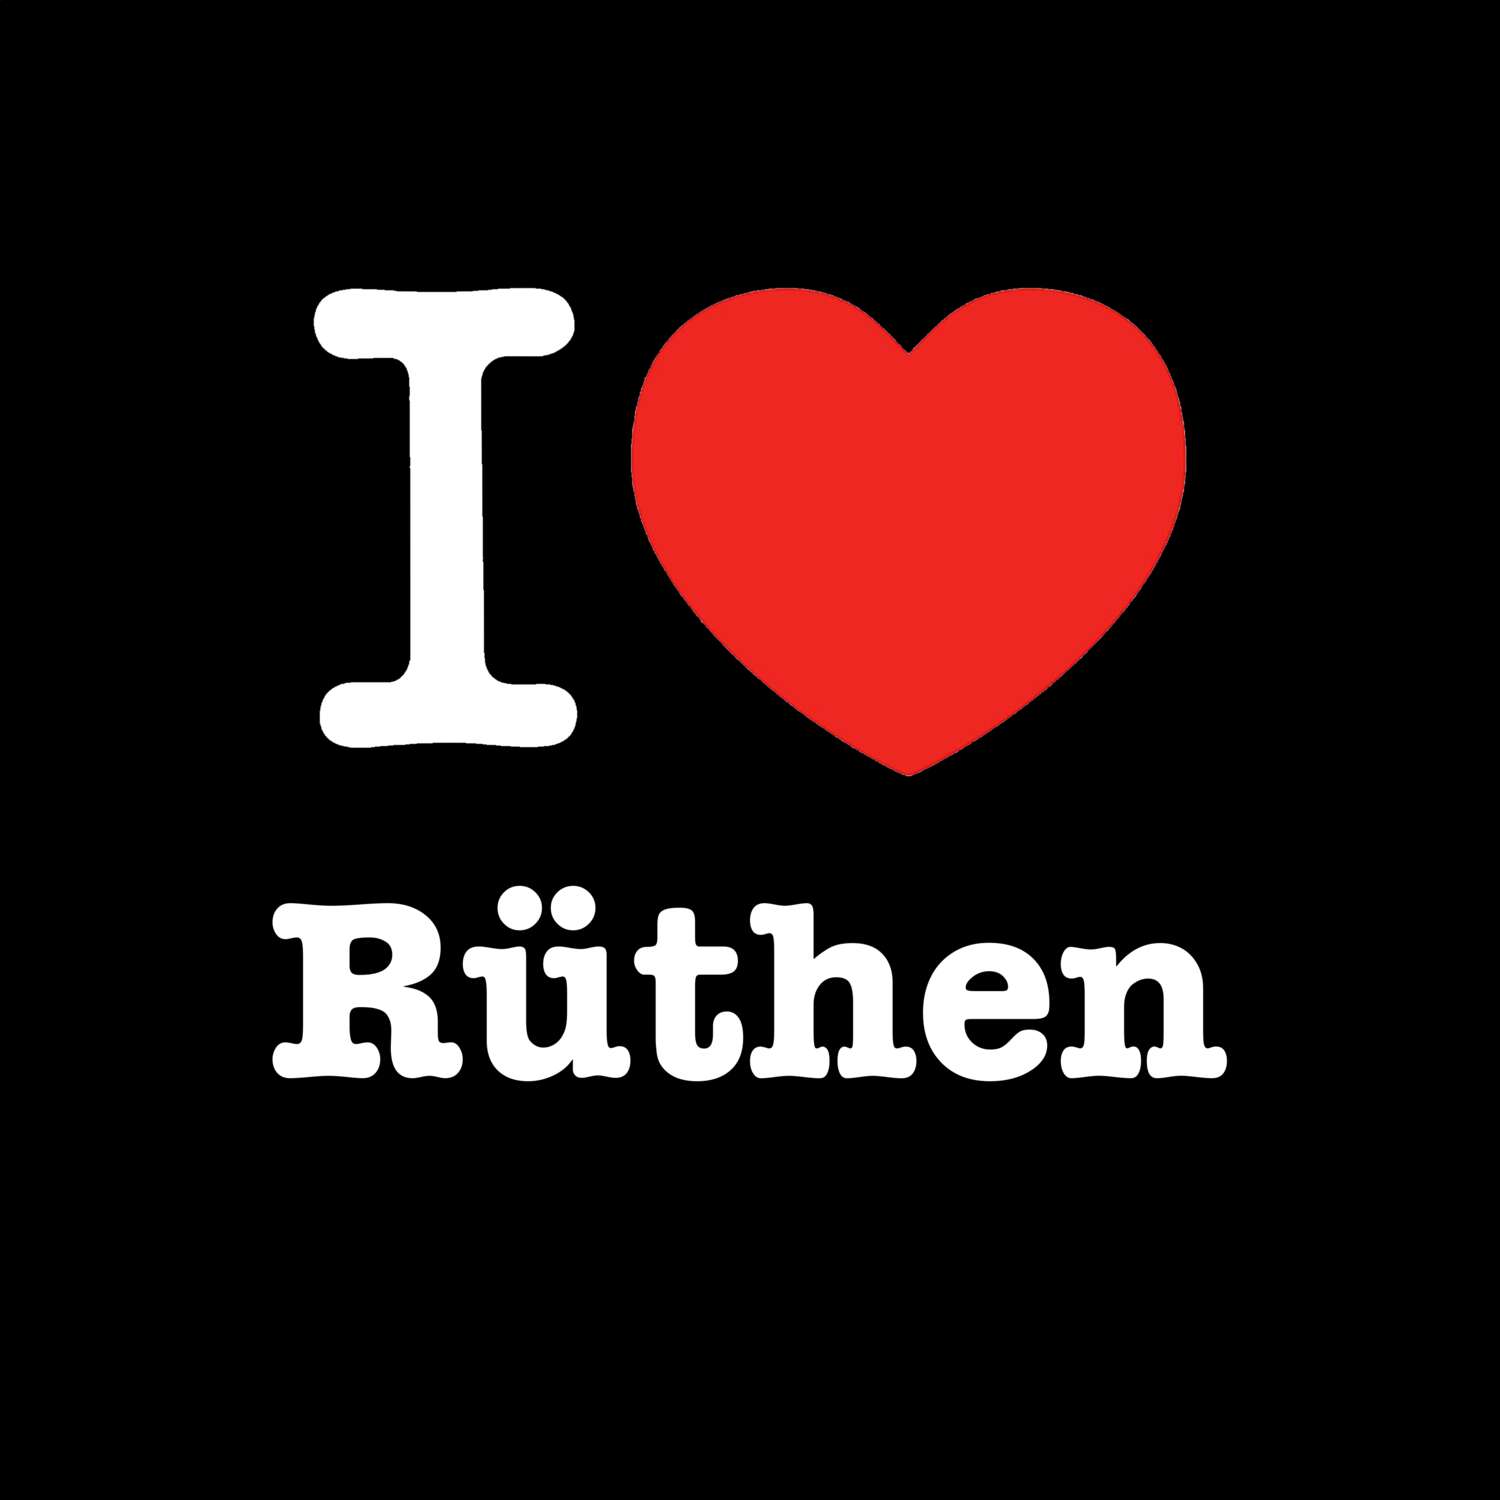 Rüthen T-Shirt »I love«